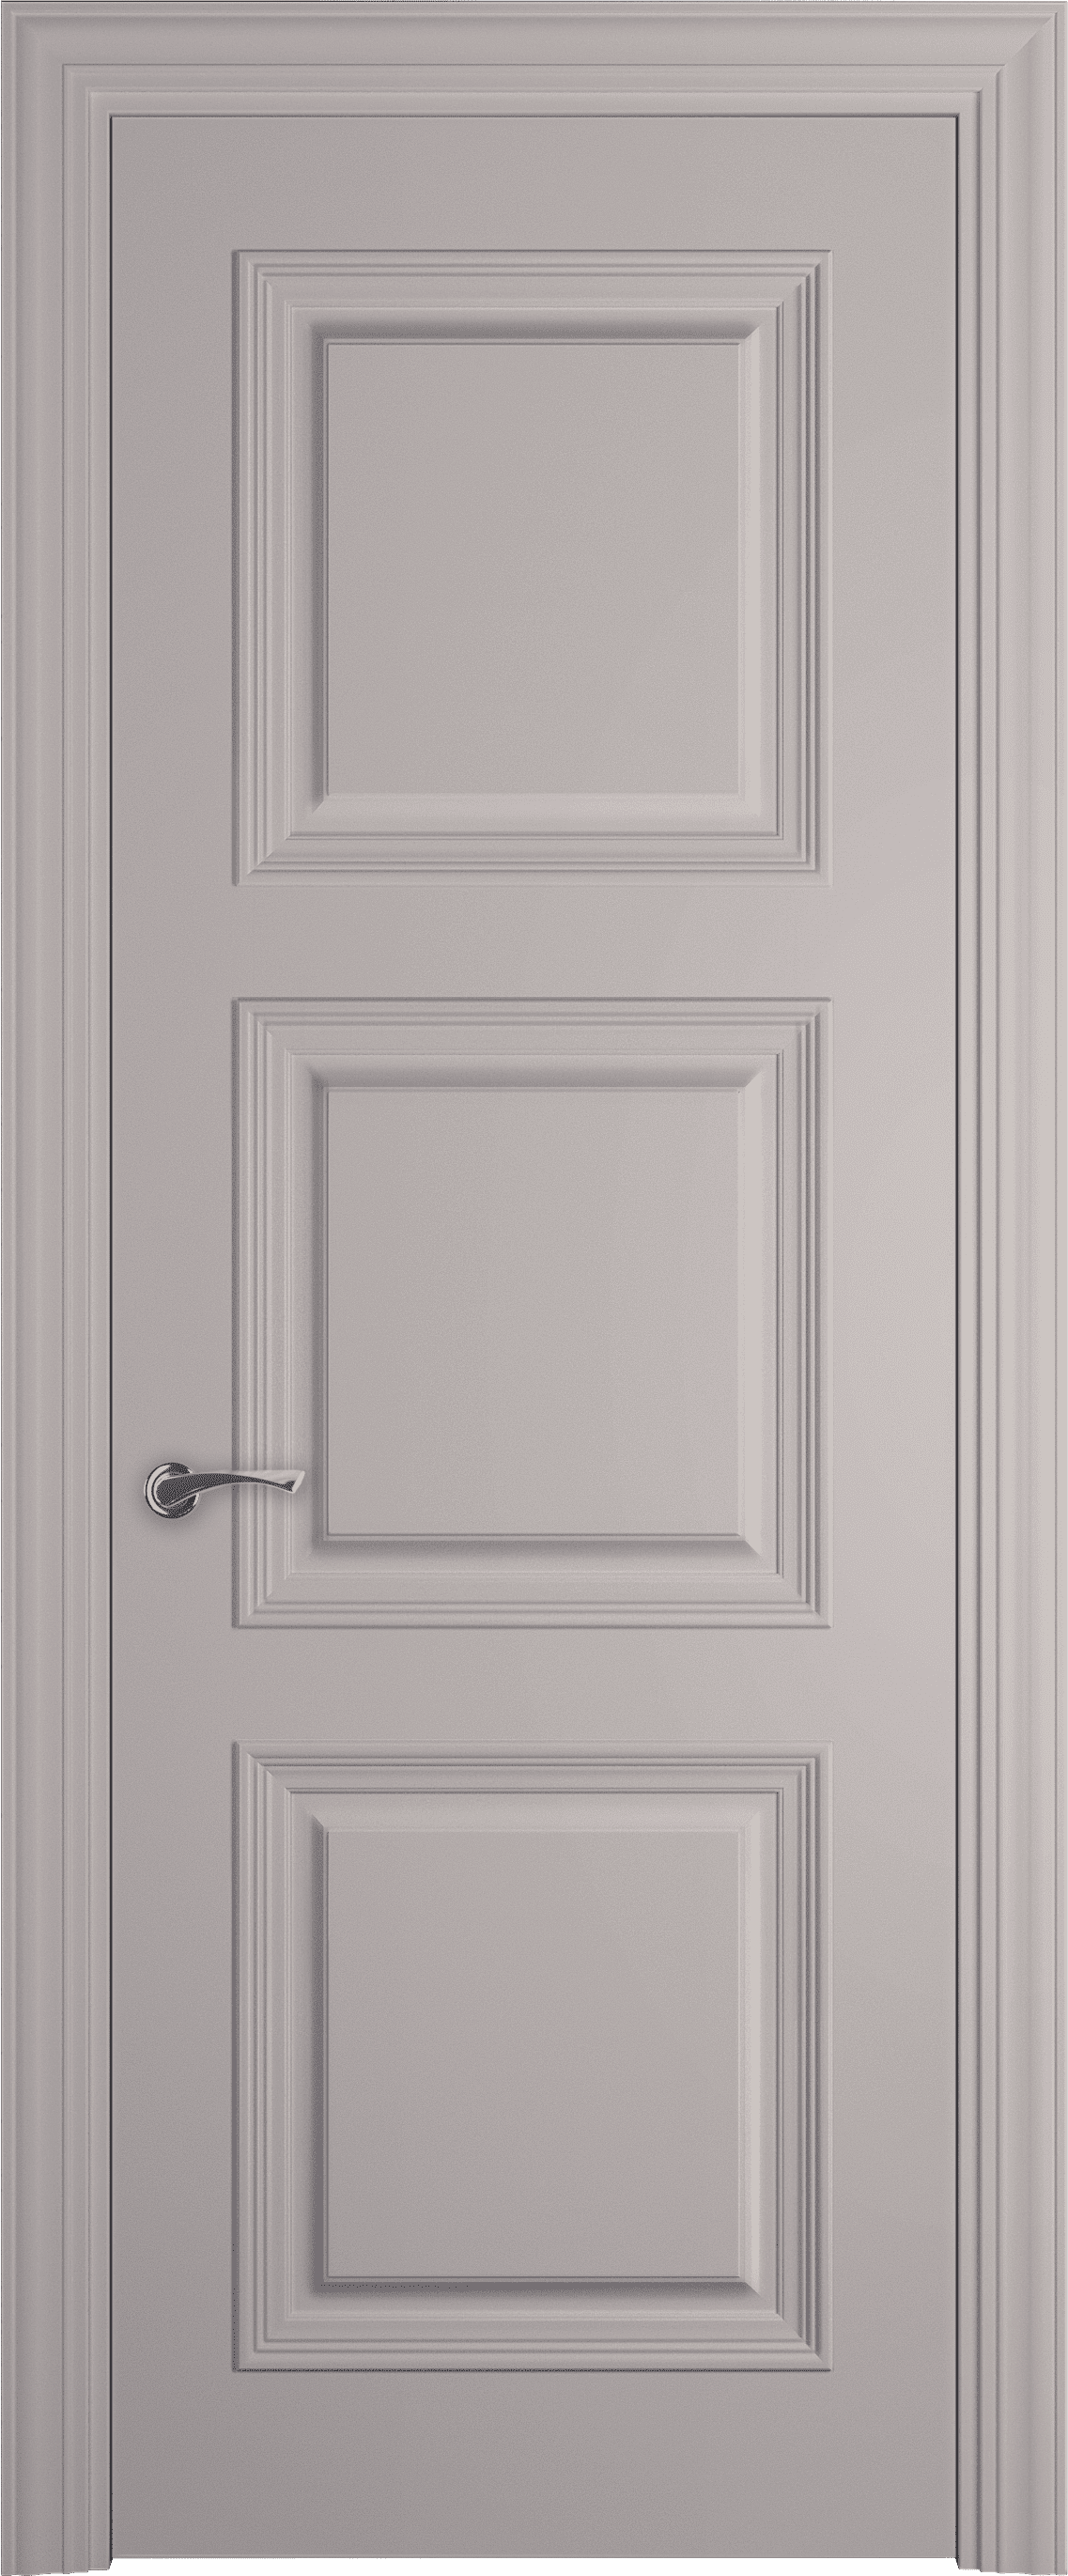 Межкомнатная дверь Трио багет 6